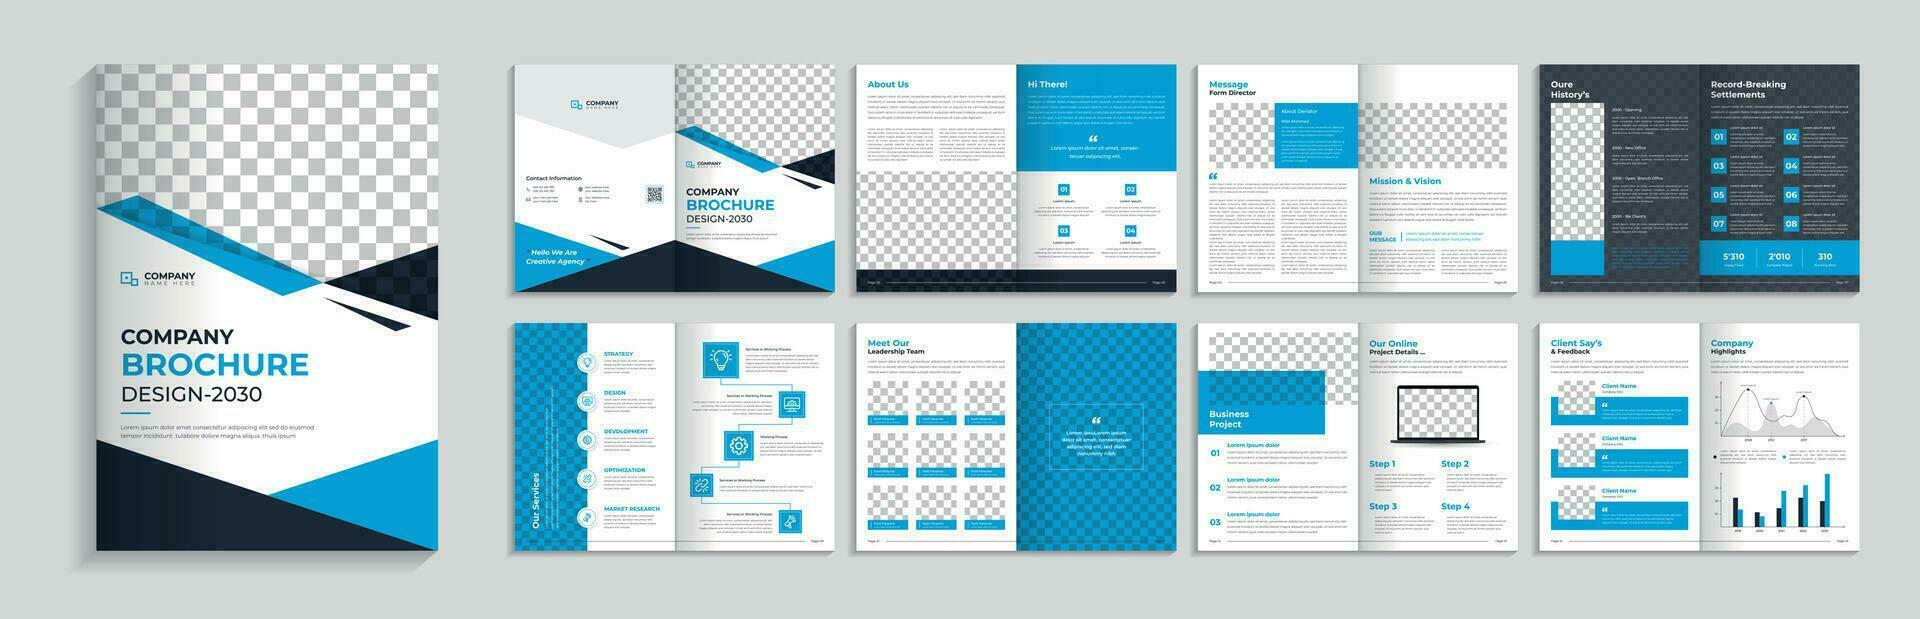 korporativ Broschüre Vorlage. Neu Geschäft Unternehmen Katalog Design vektor